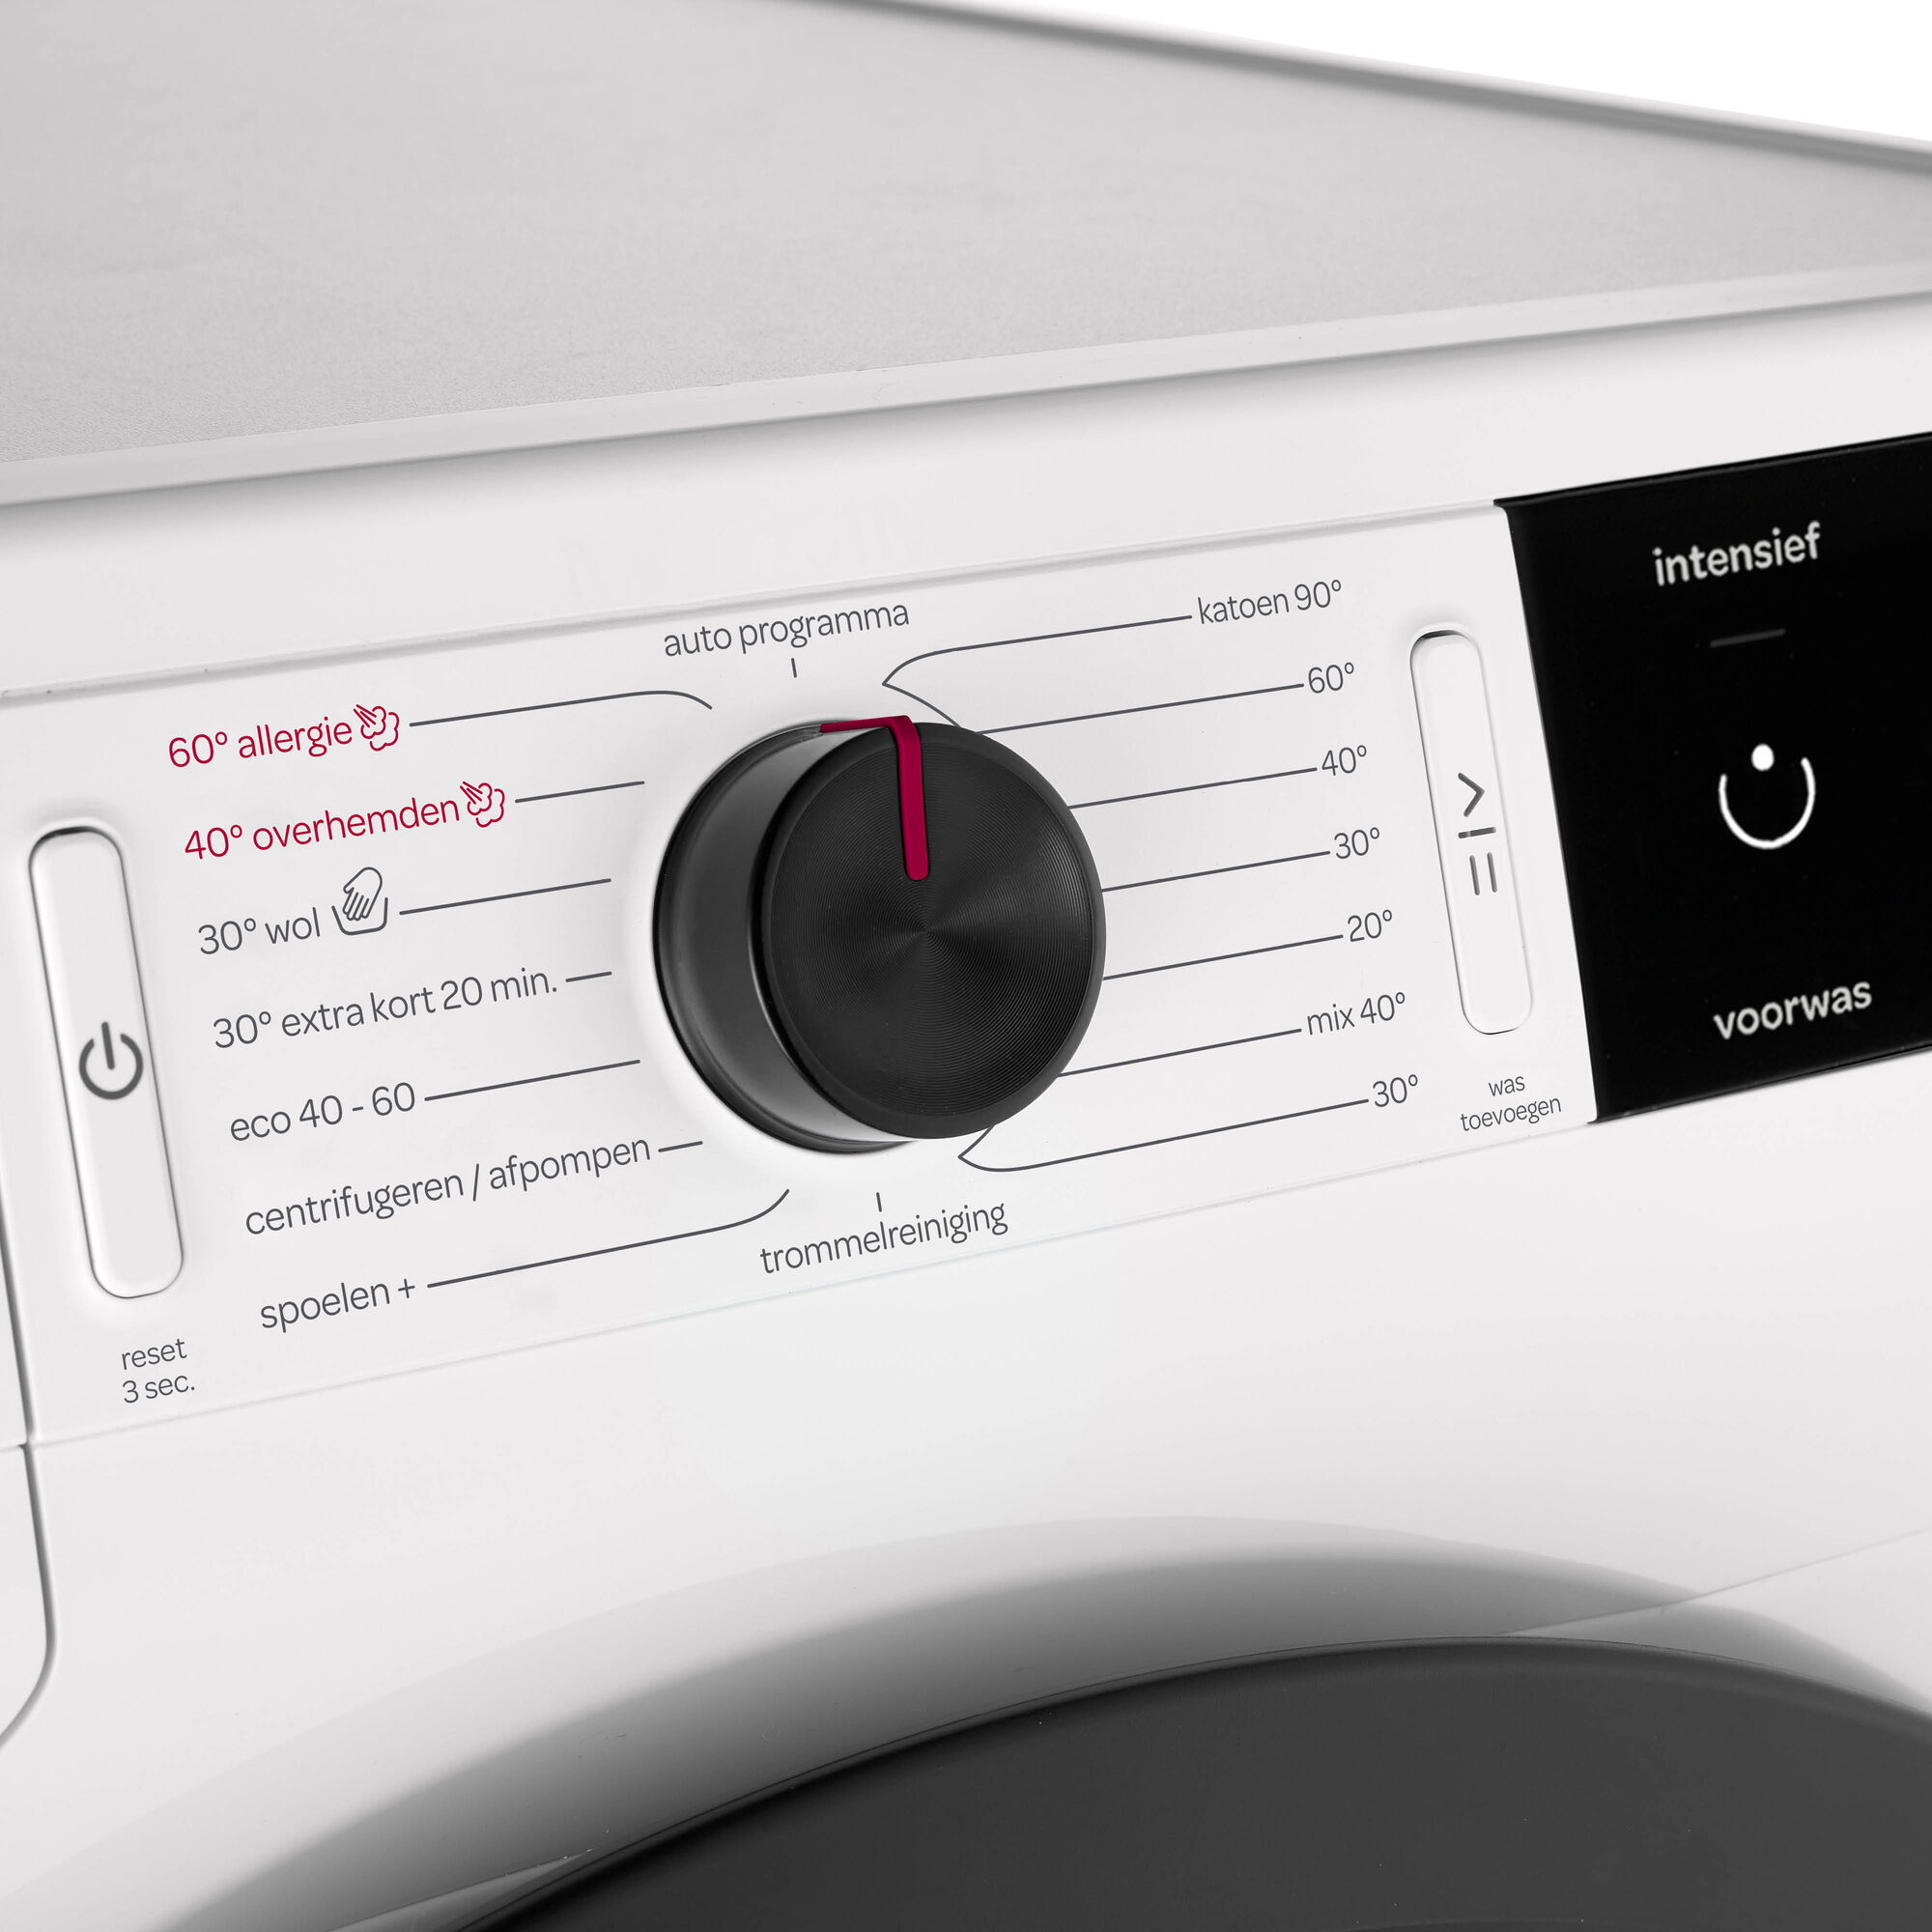 Draad auteur bleek Inventum VMW9001W wasmachine – Handel bij van Andel